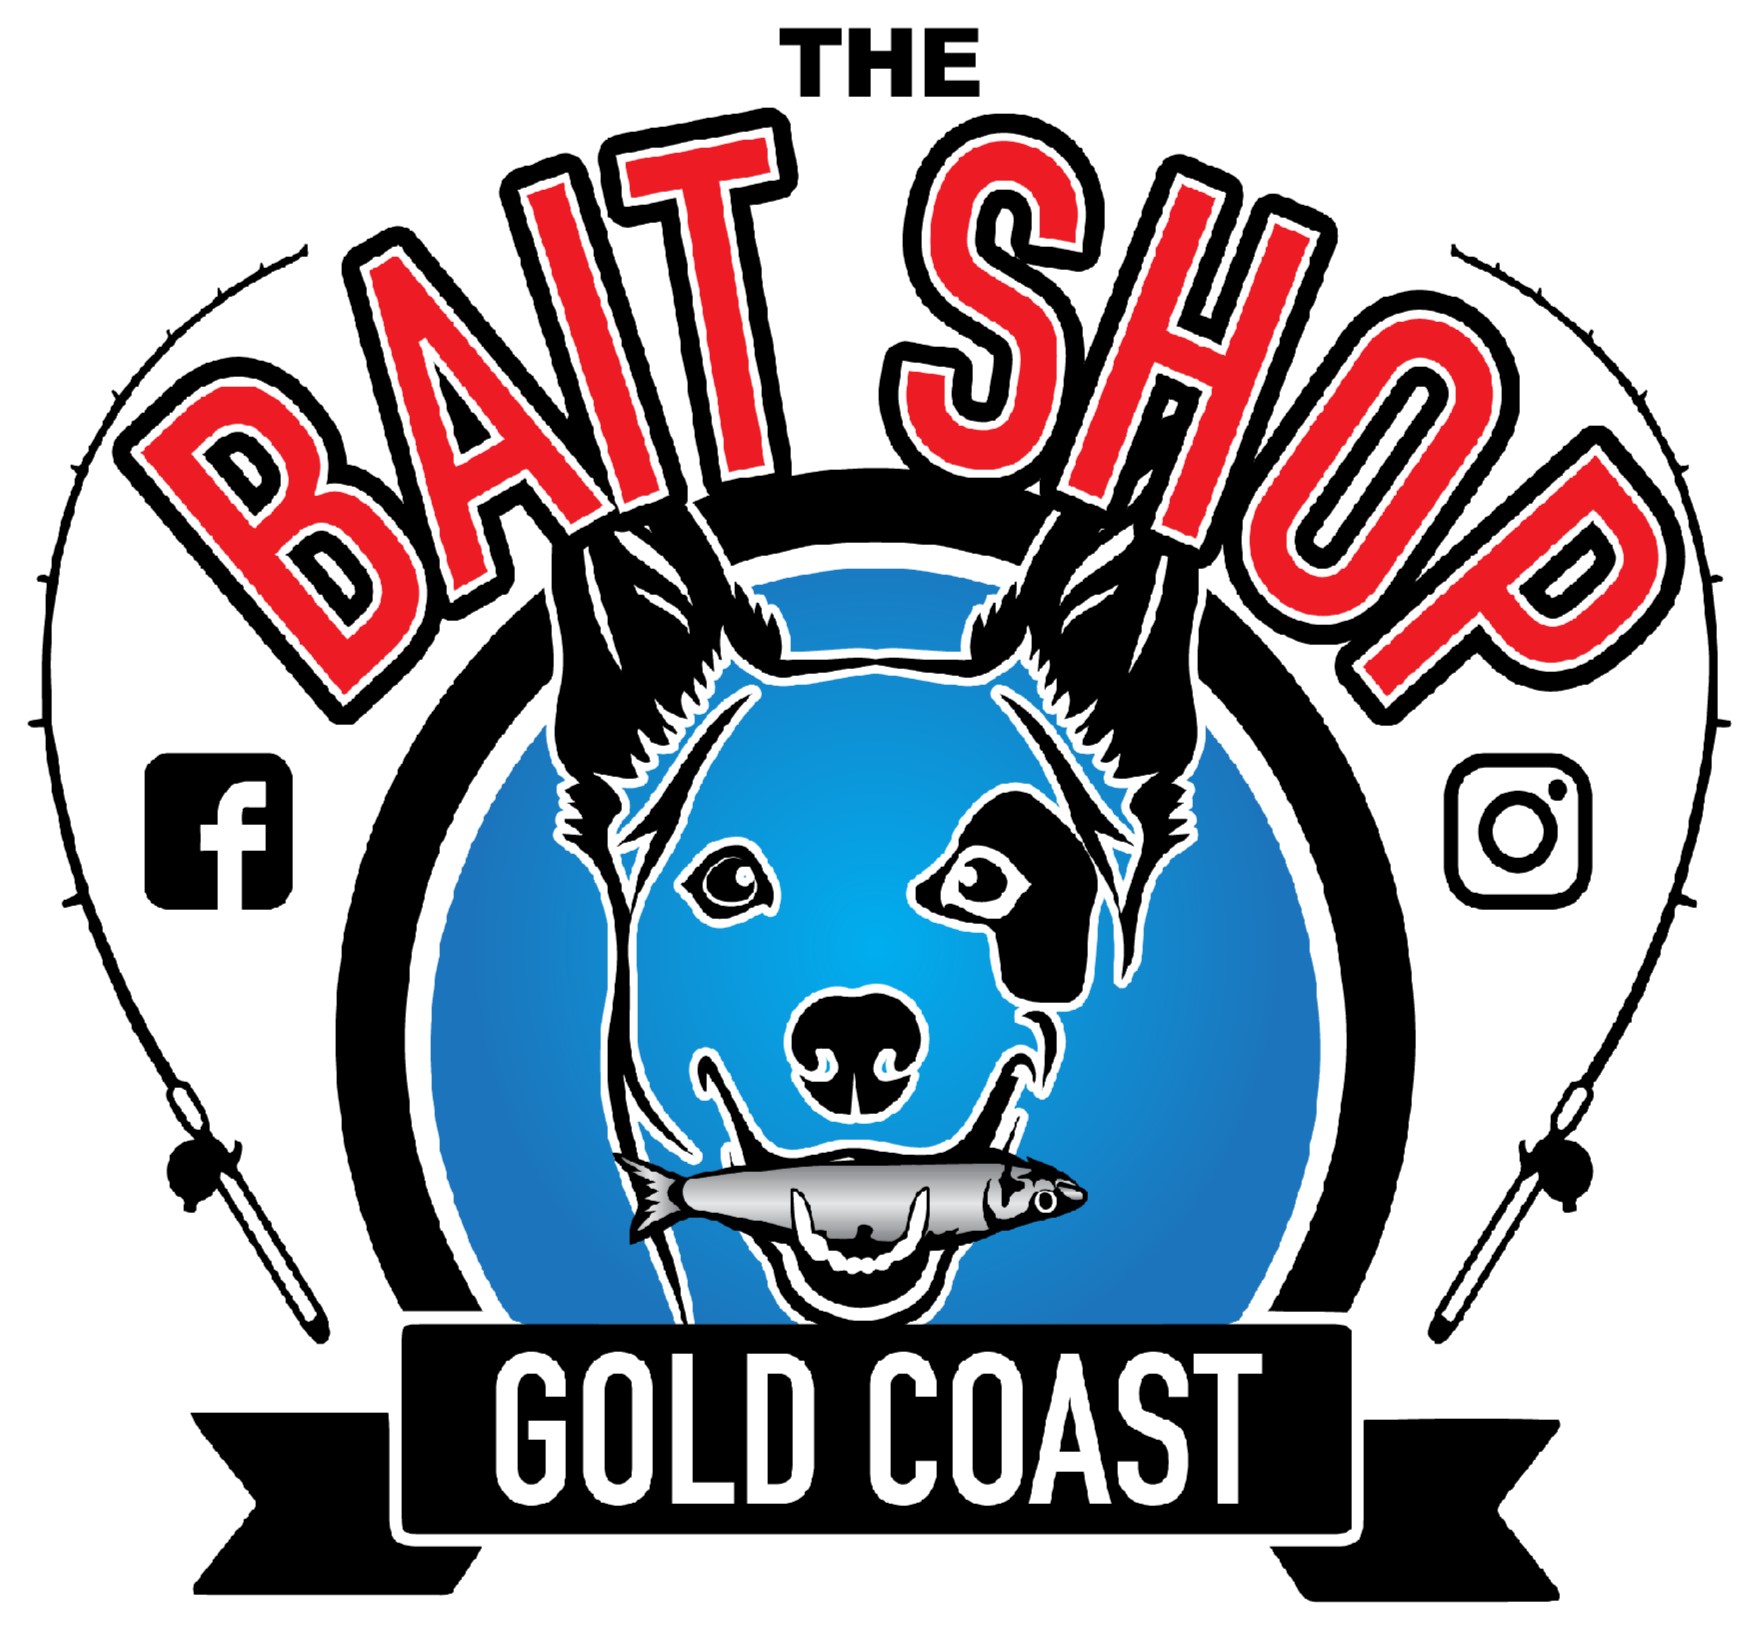 The Bait Shop Gold Coast - The Bait Shop Gold Coast